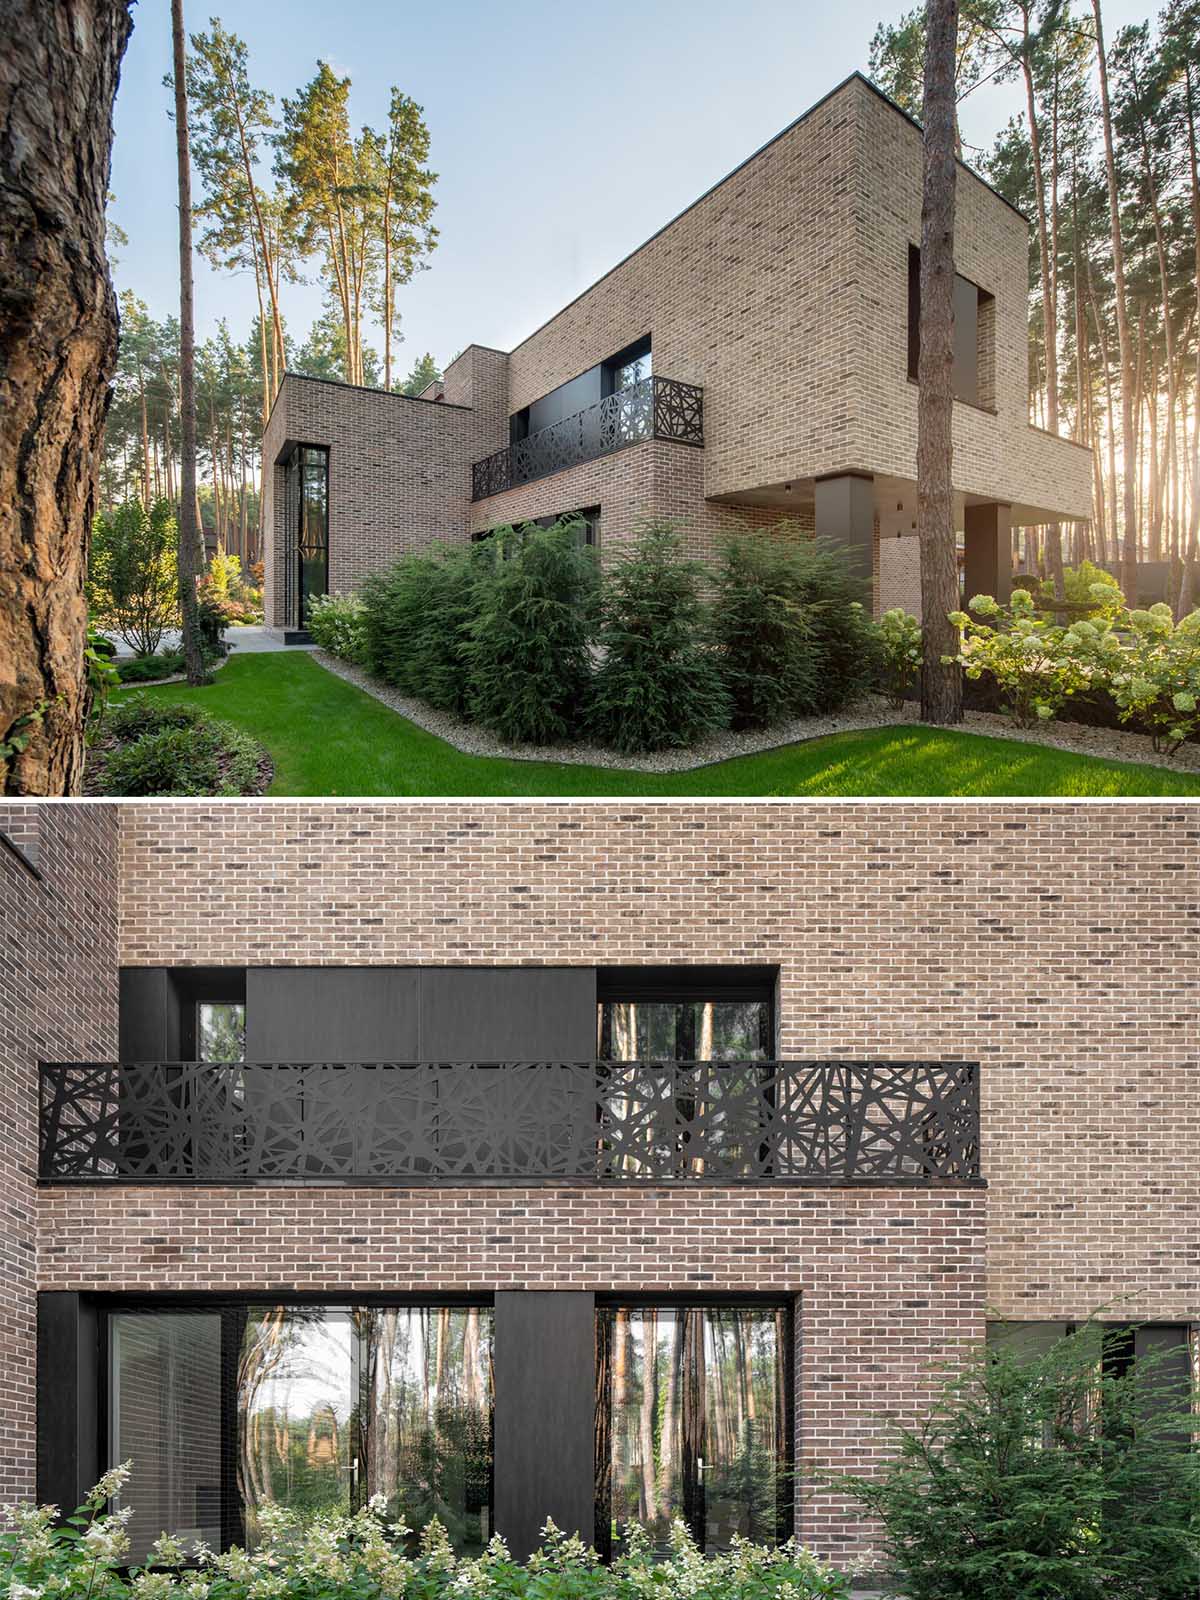 Коричневый кирпич этого дома дополняют и контрастируют черные стальные оконные рамы, панели и балконные перила.